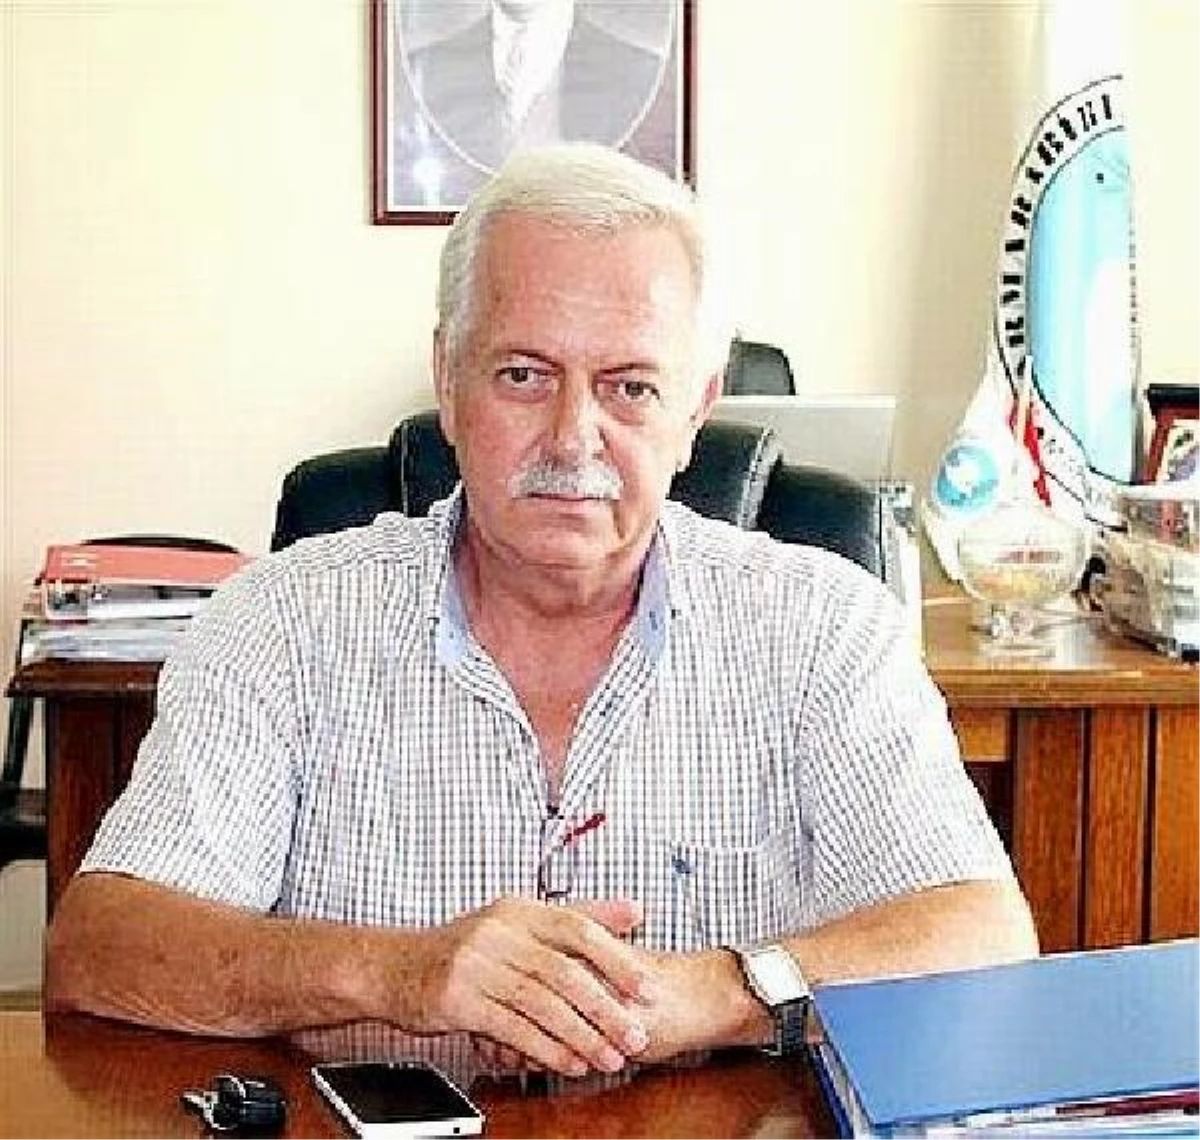 Eski Ocaklar Beldesi Başkanı Hüseyin Durak, deprem soruşturmasında tutuklandı